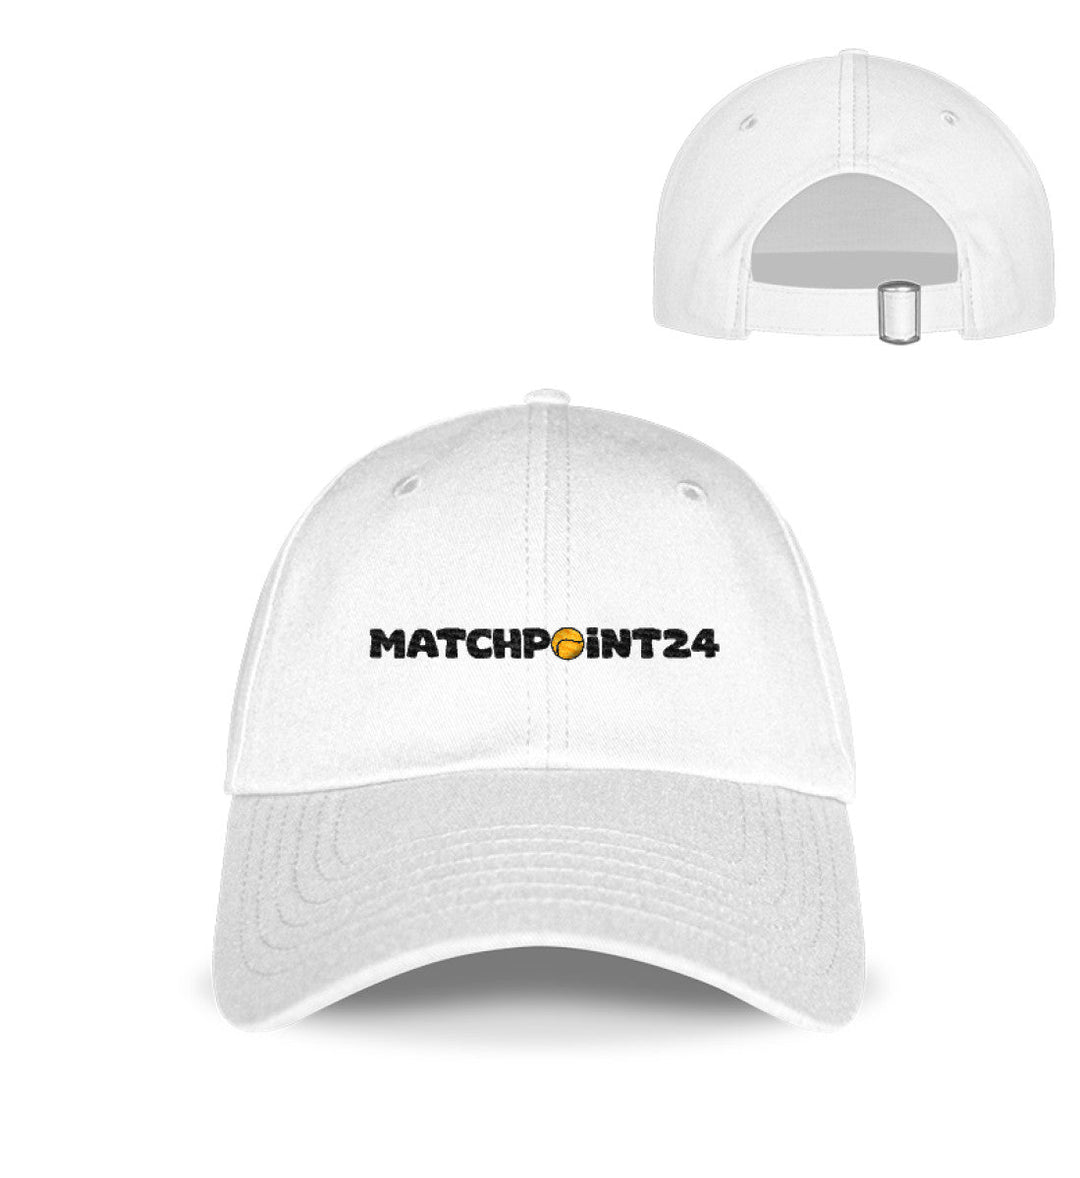 matchpoint24 | Organic Cap (bestickt) - Matchpoint24 - Kleidung für Tennisfans